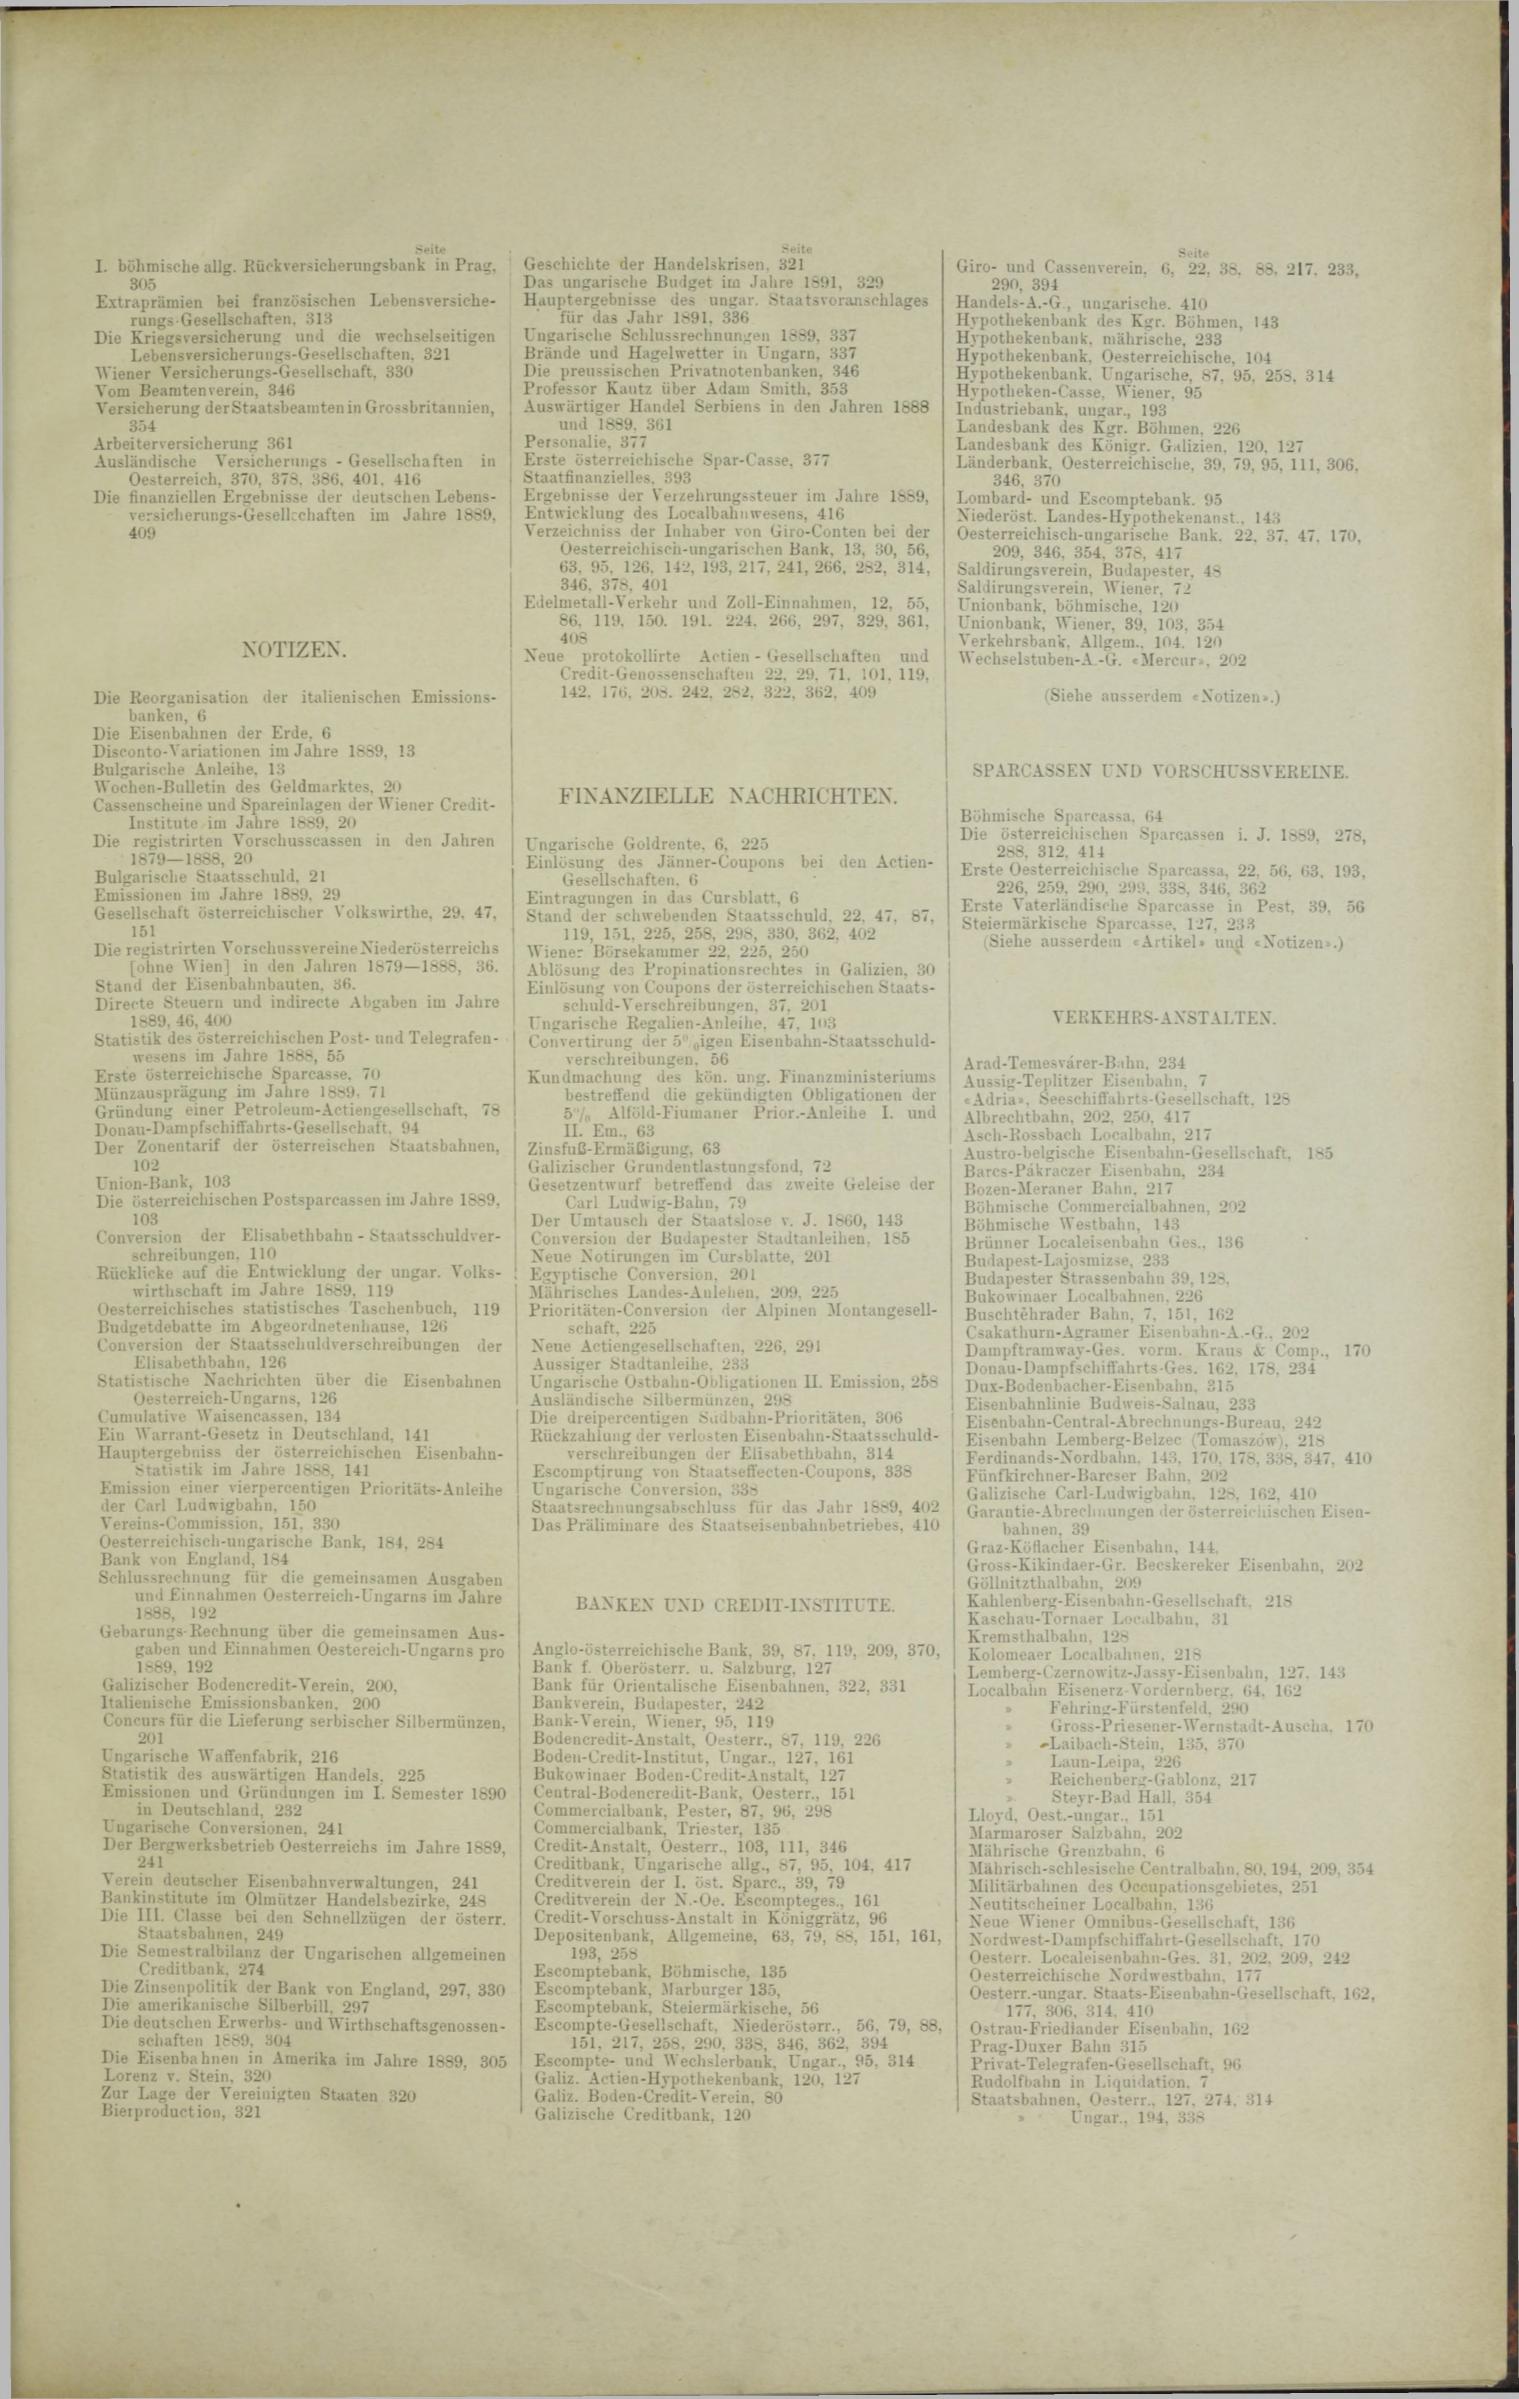 Der Tresor 11.12.1890 - Seite 11